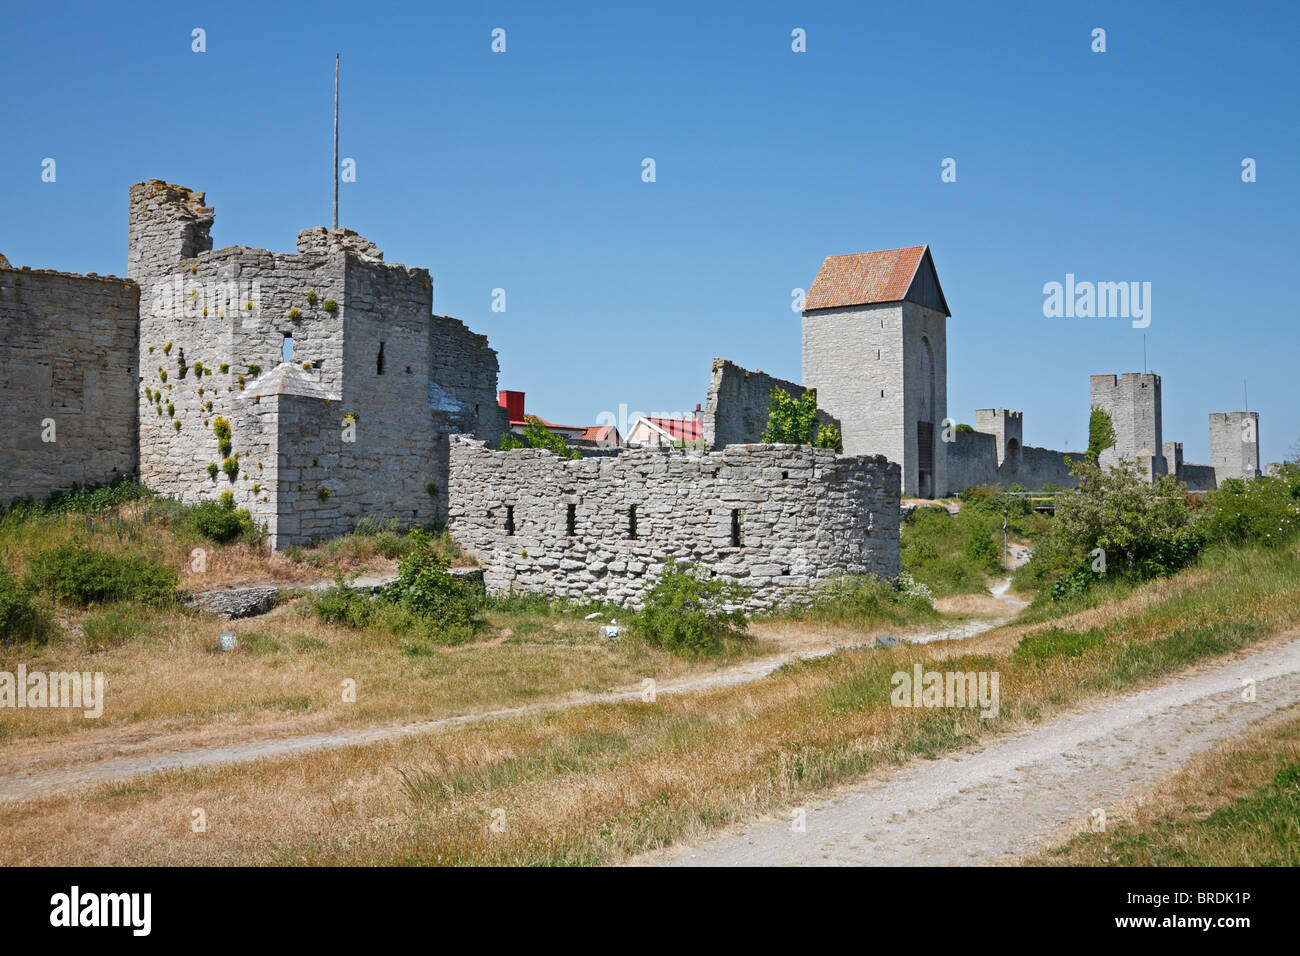 La parte orientale dell'anello medievale a parete, il muro della città, intorno la città anseatica di Visby sull'isola svedese di Gotland nel Mar Baltico. Foto Stock